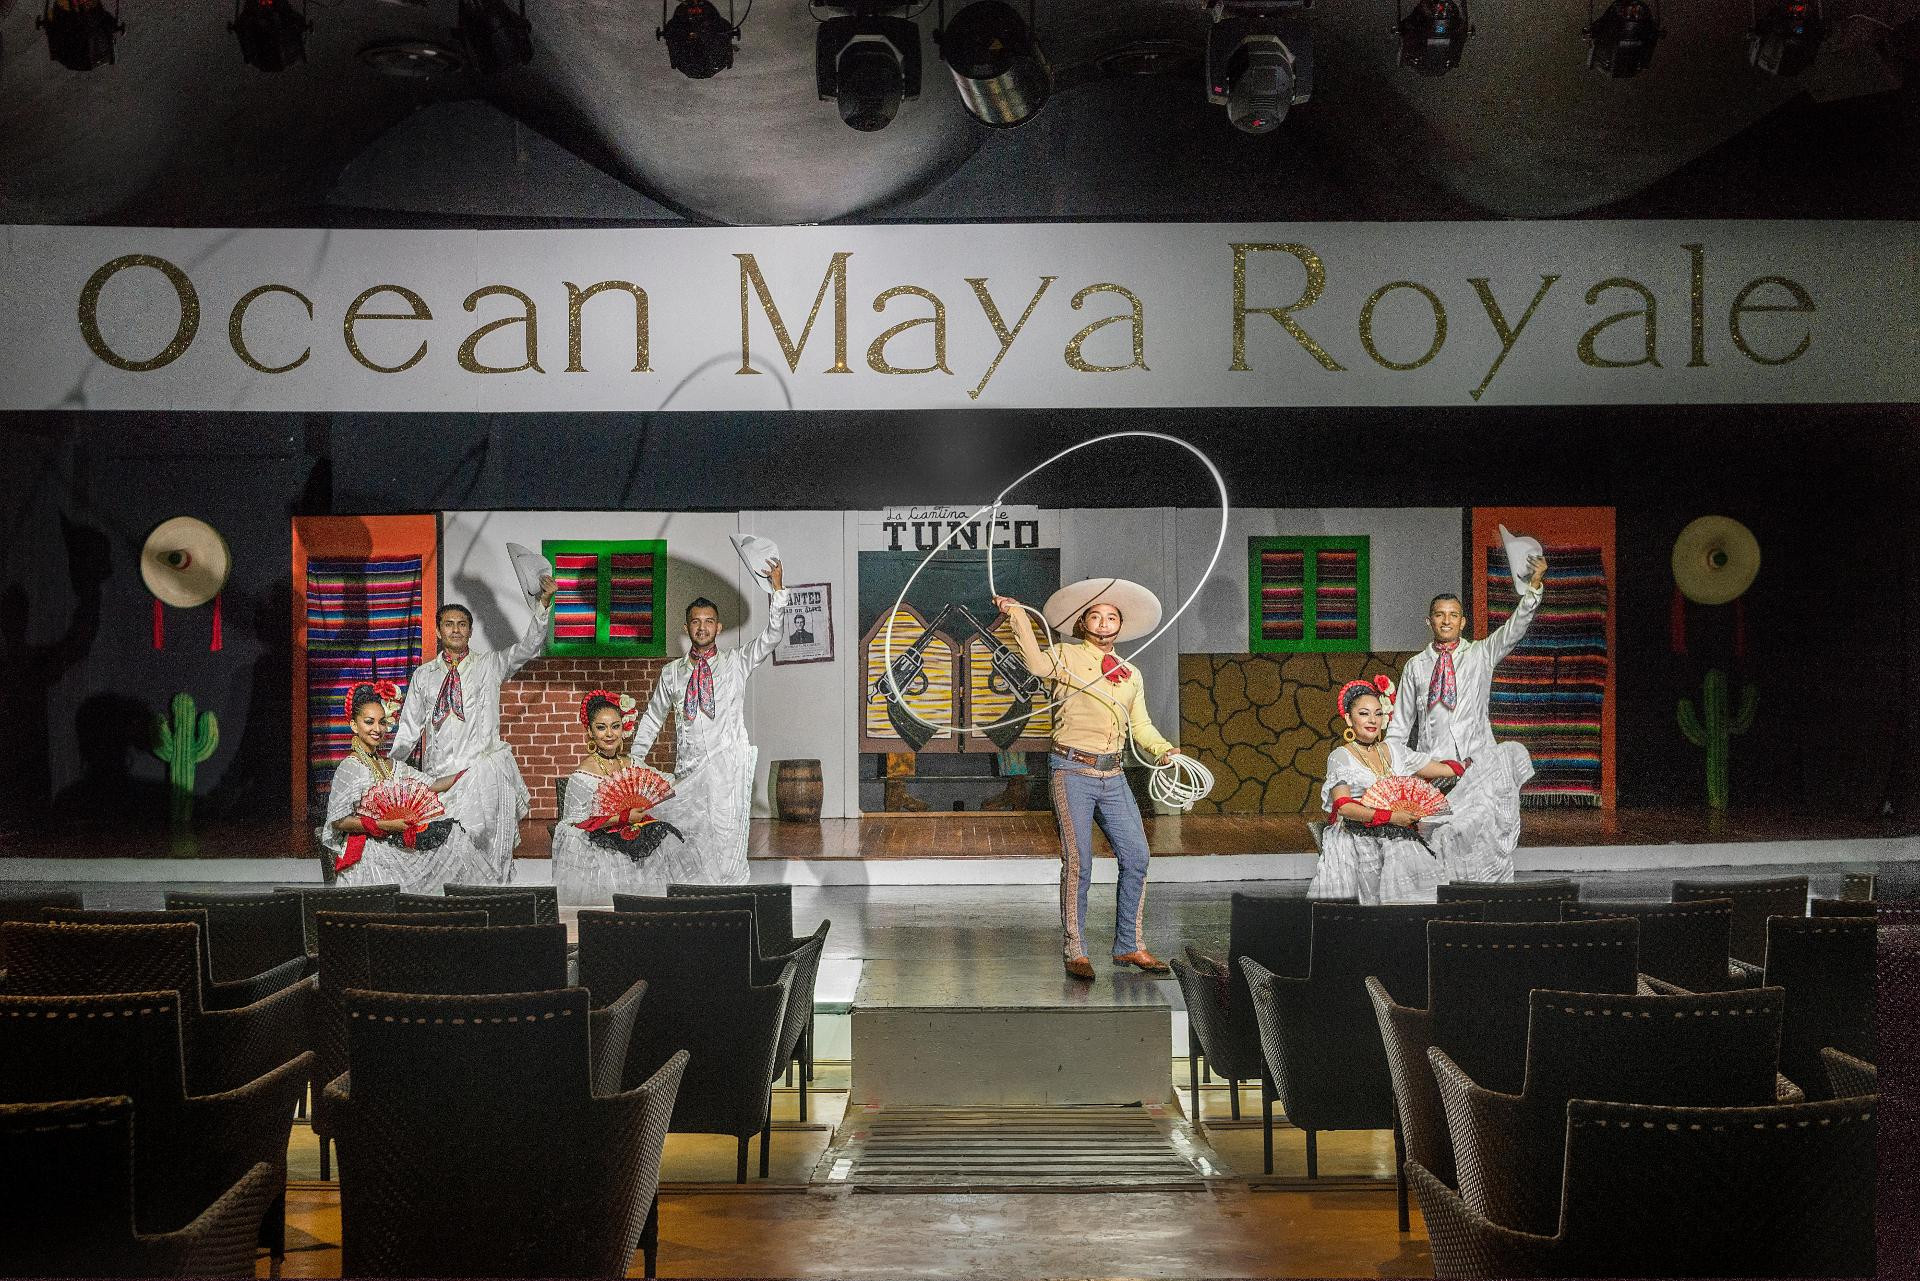 Instalaciones Recreativas Ocean Maya Royale - Solo Adultos All Inclusive